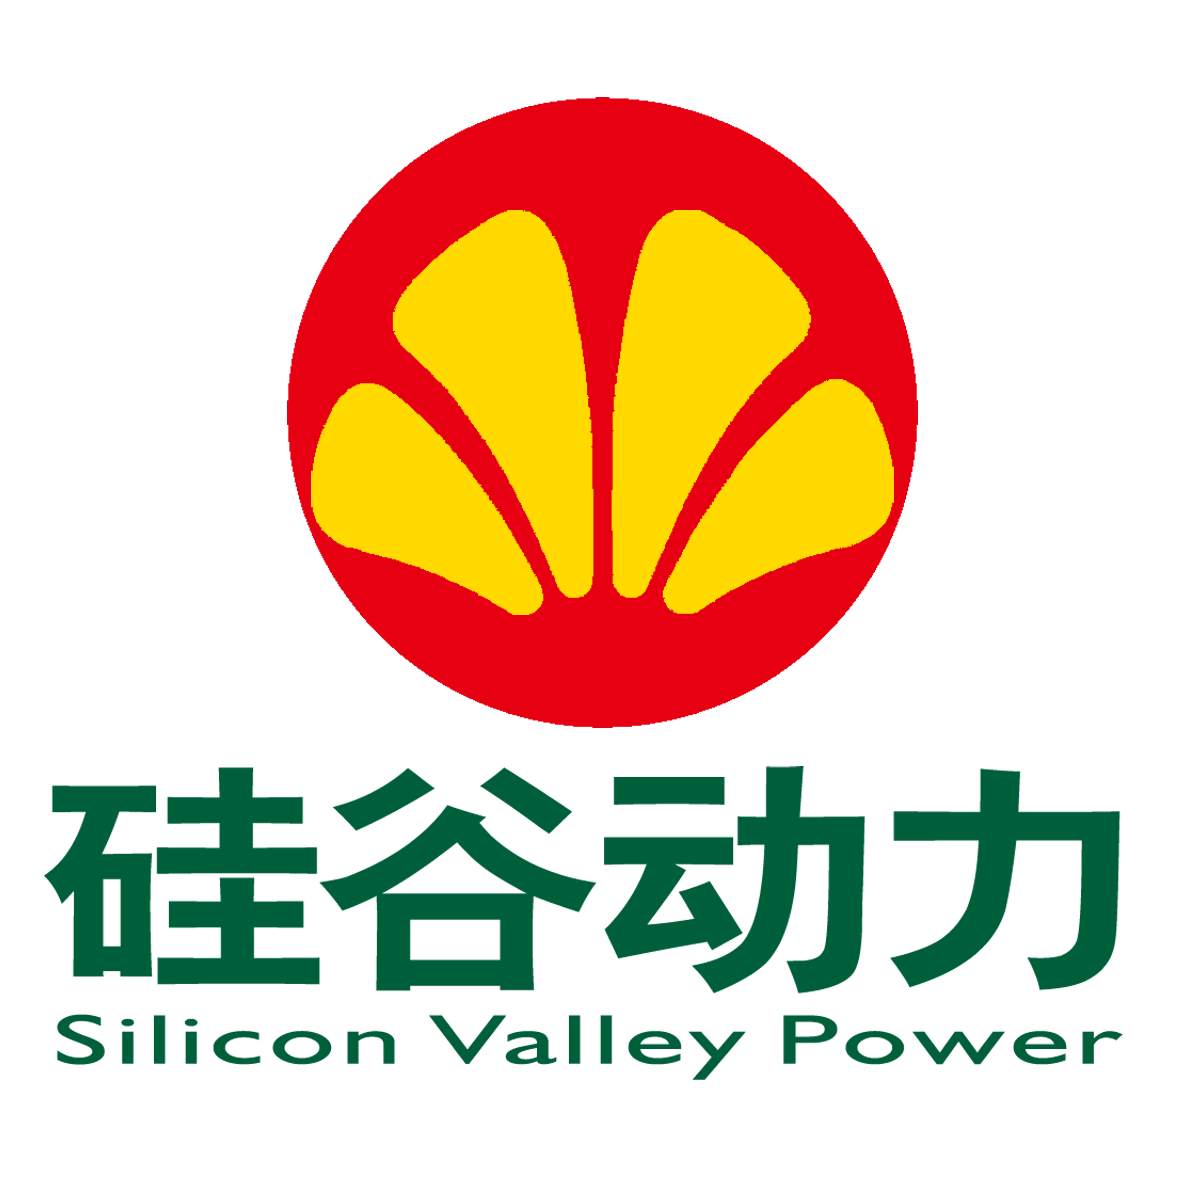 深圳市硅谷动力产业园运营有限公司最新招聘信息